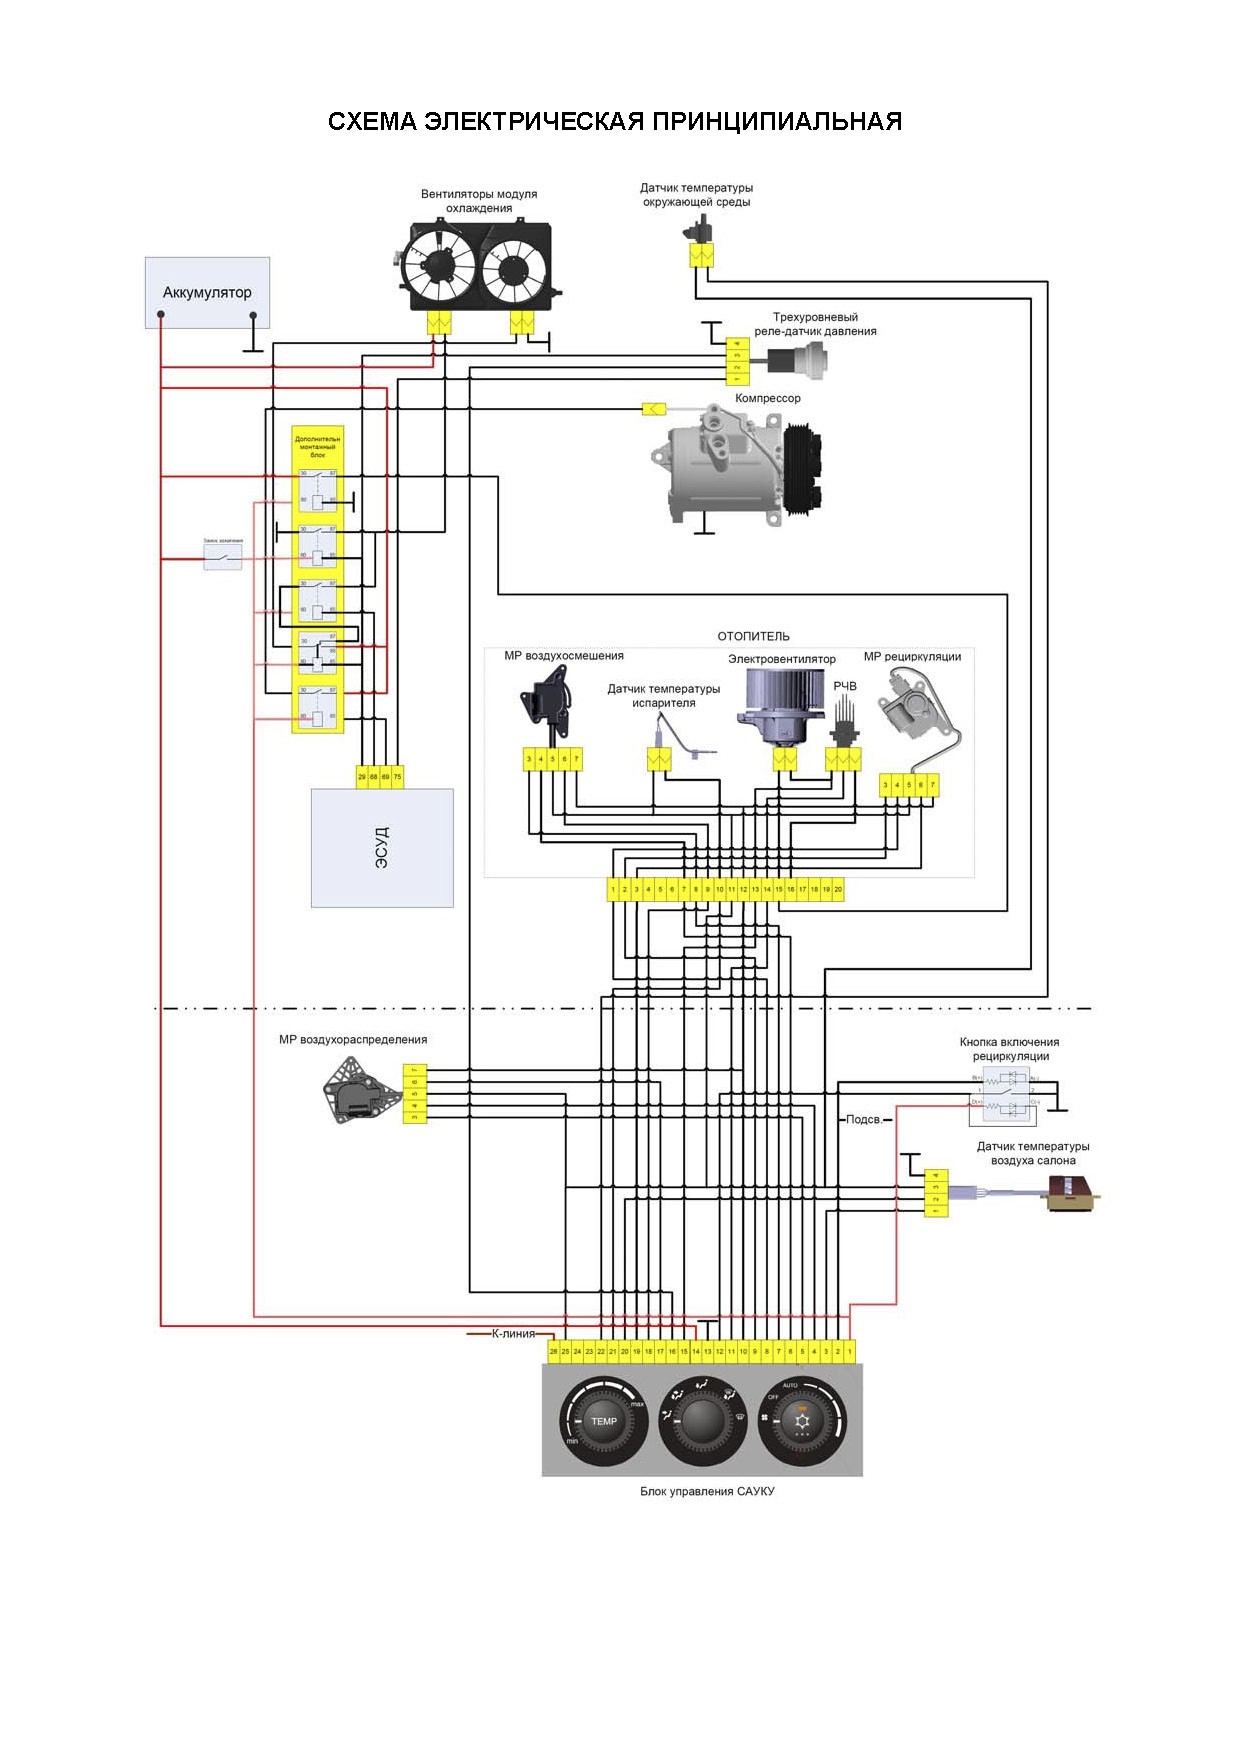 Схема электрических соединений жгута кондиционирования и отопления автомобиля LADA 2170